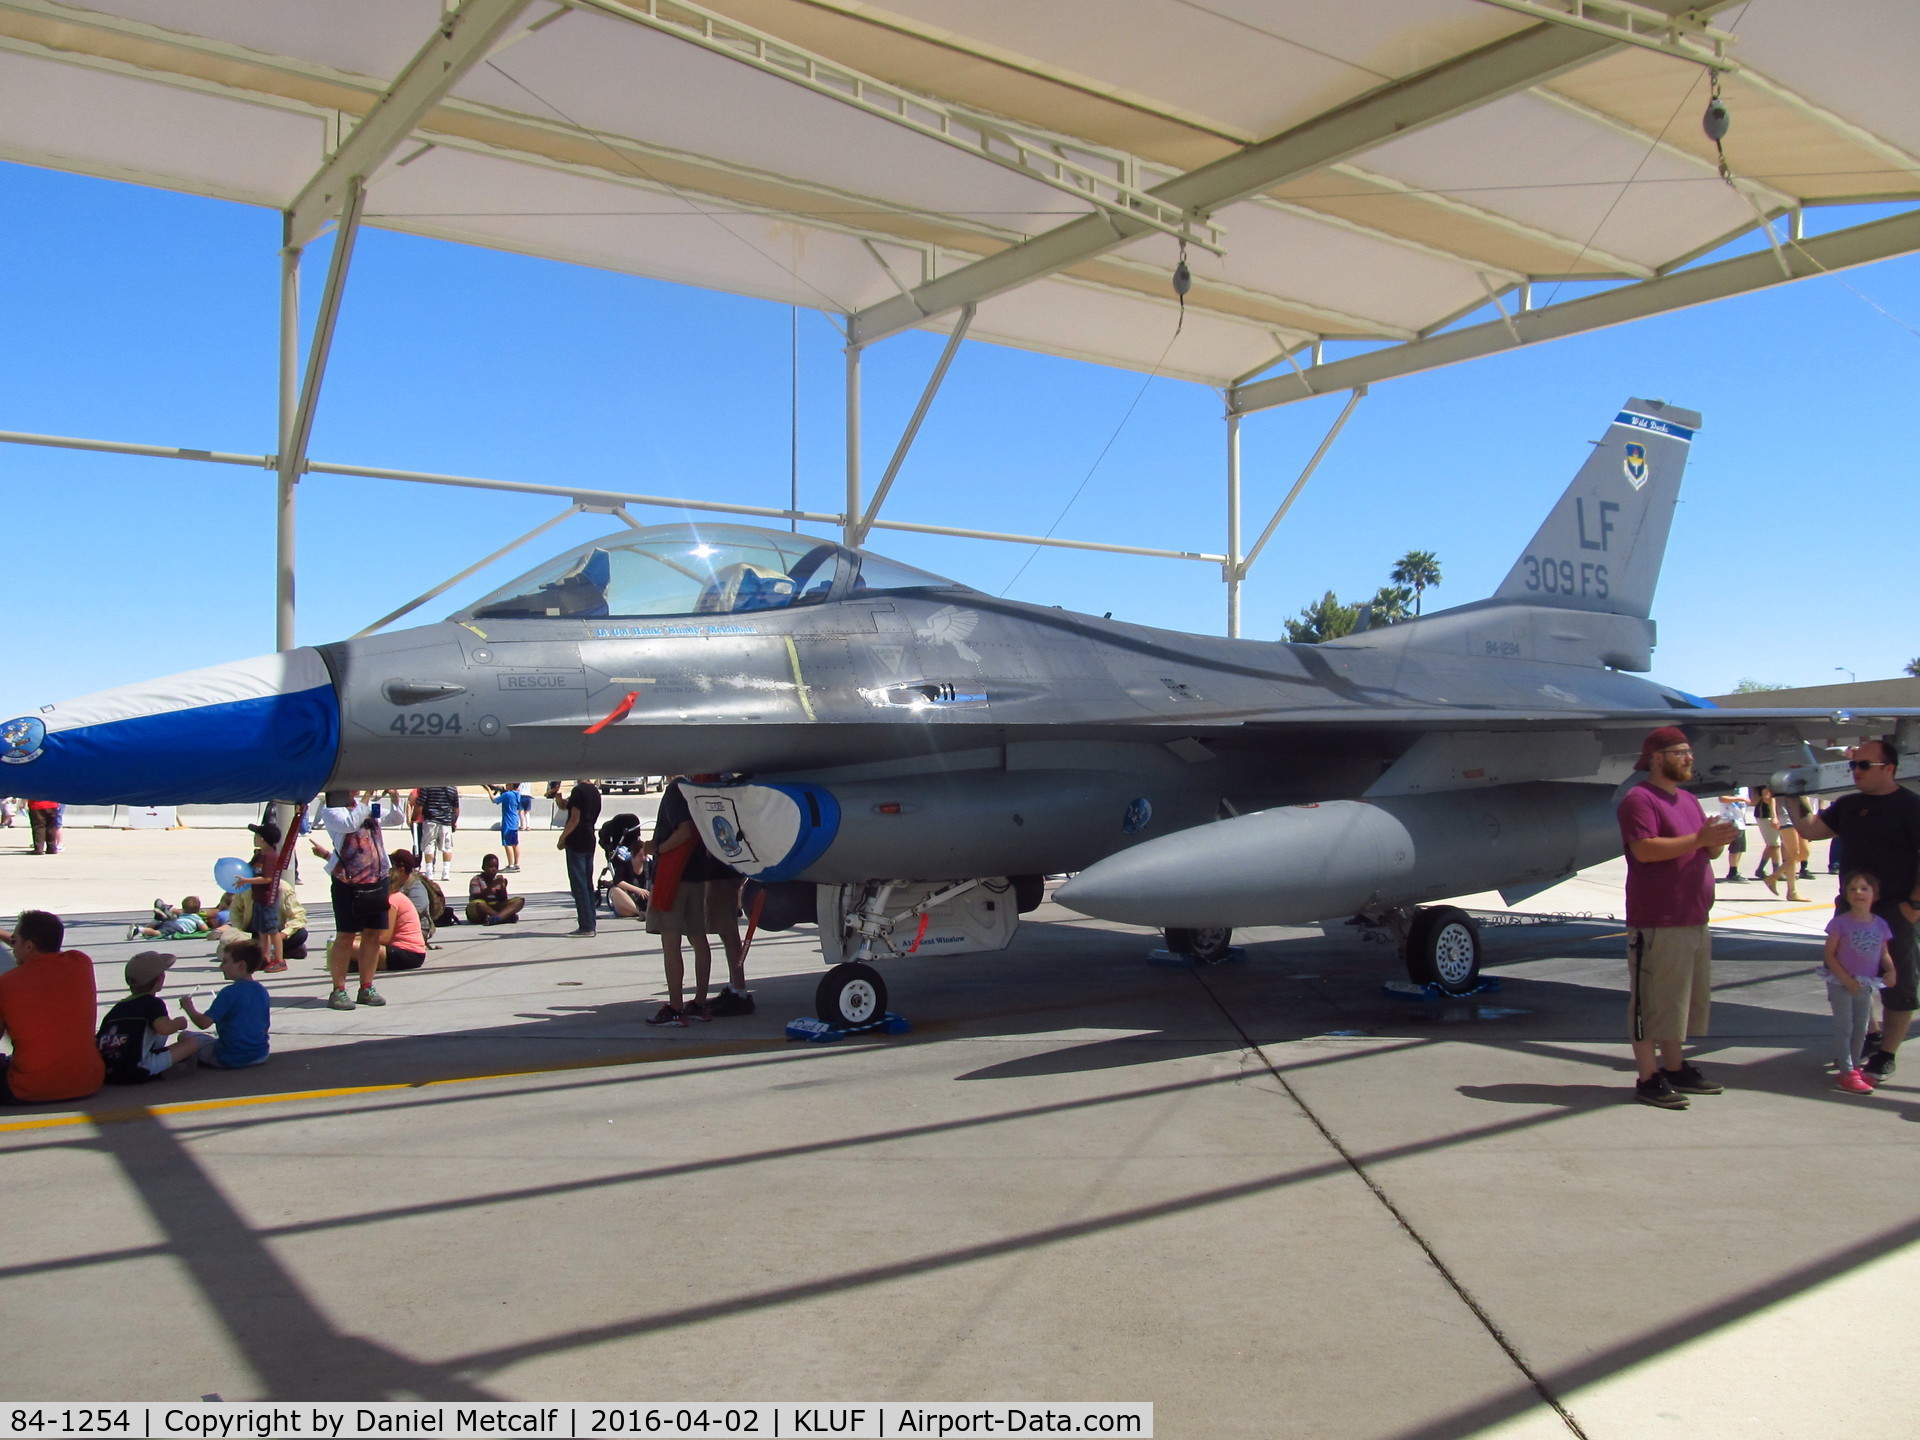 84-1254, 1984 General Dynamics F-16C Fighting Falcon C/N 5C-91, Luke AFB Air Show 2016